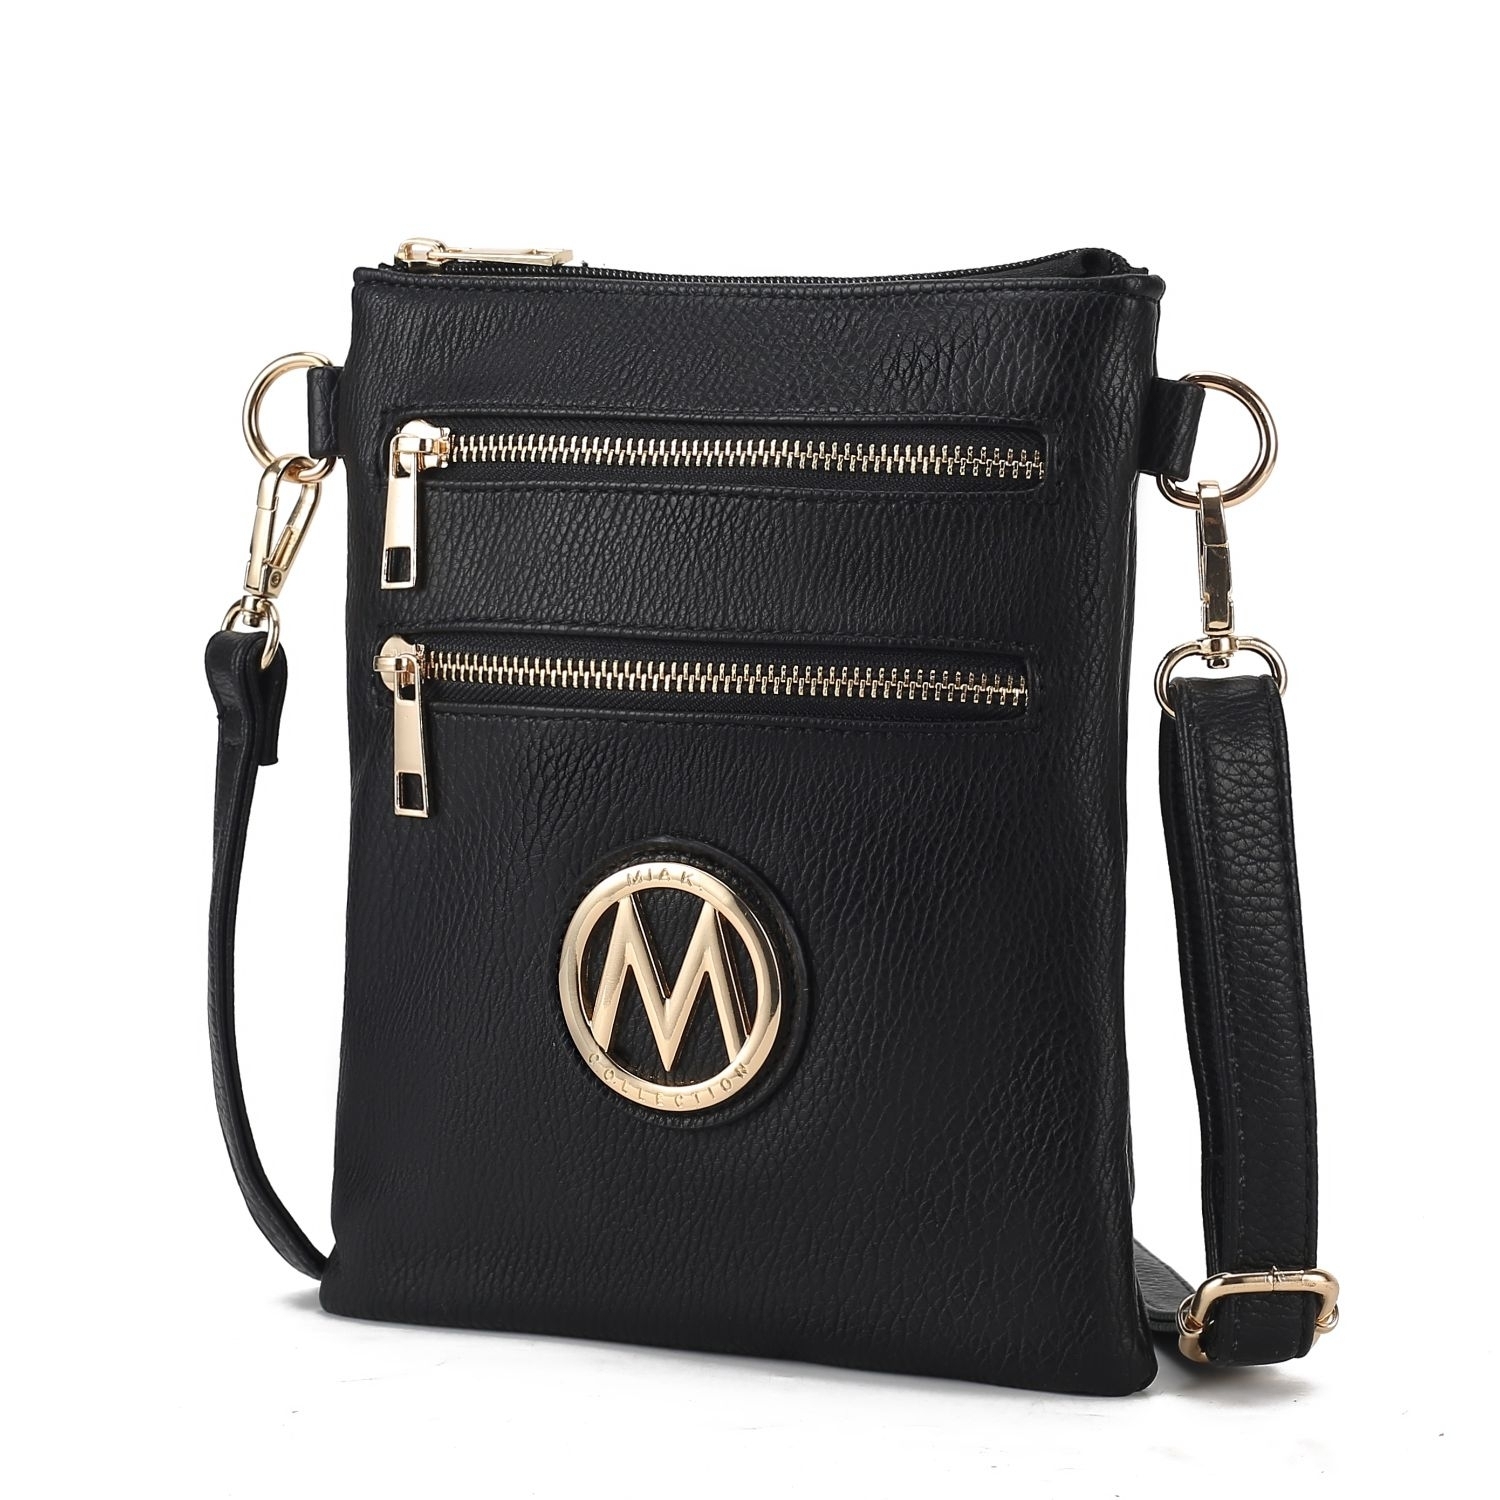 MKF Collection Medina Crossbody Handbag By Mia K. - Taupe